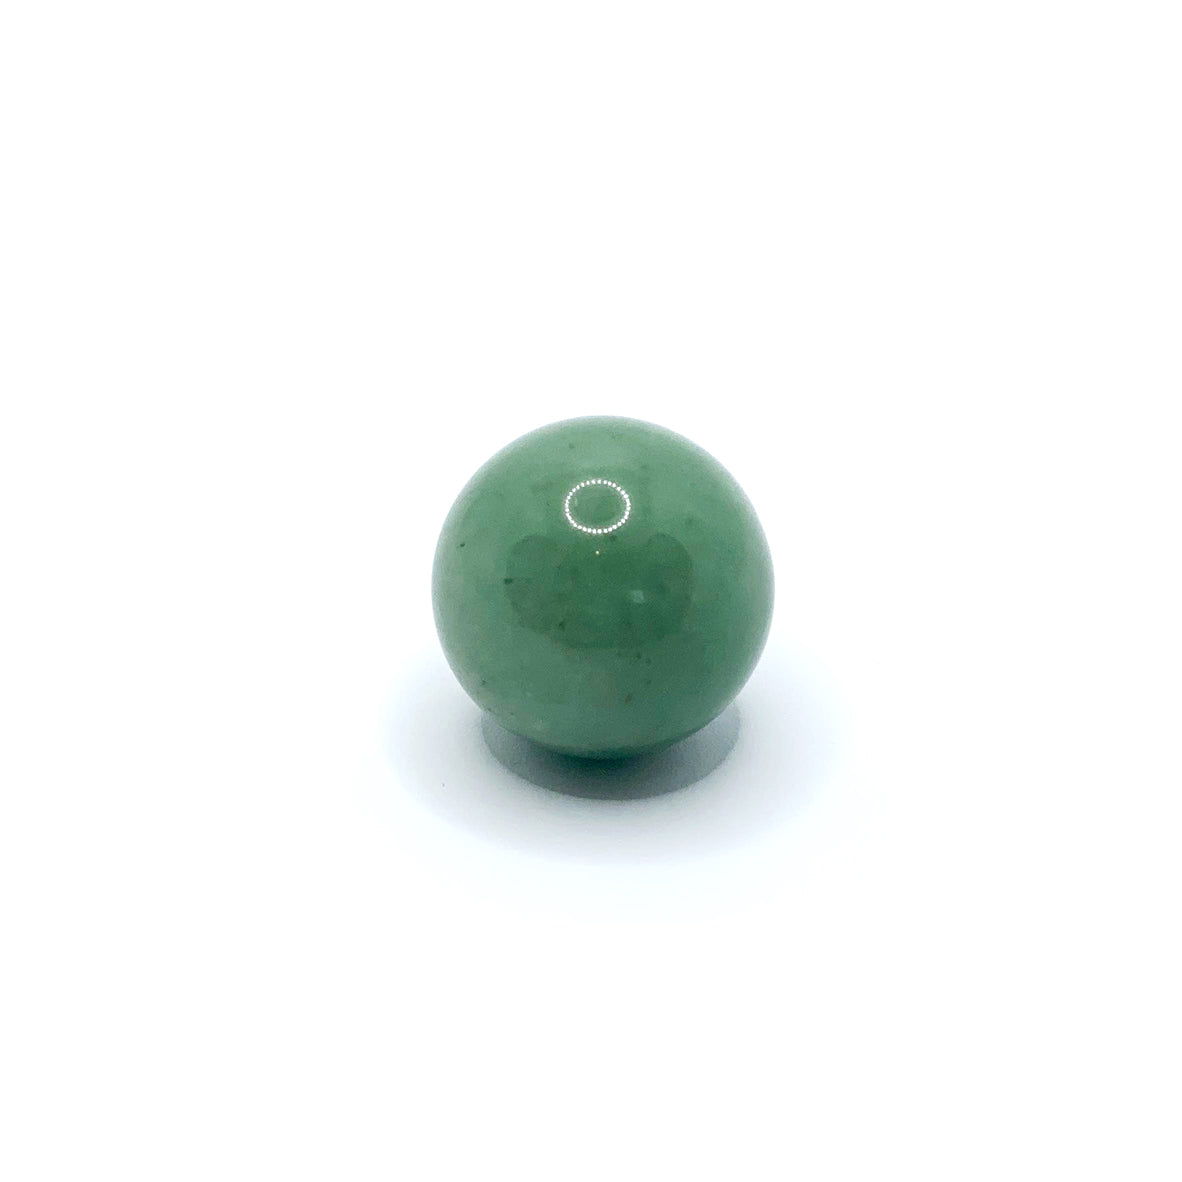 Akmens Aventurīns / Zaļais Aventurīns / Green Aventurine Sphere 20mm